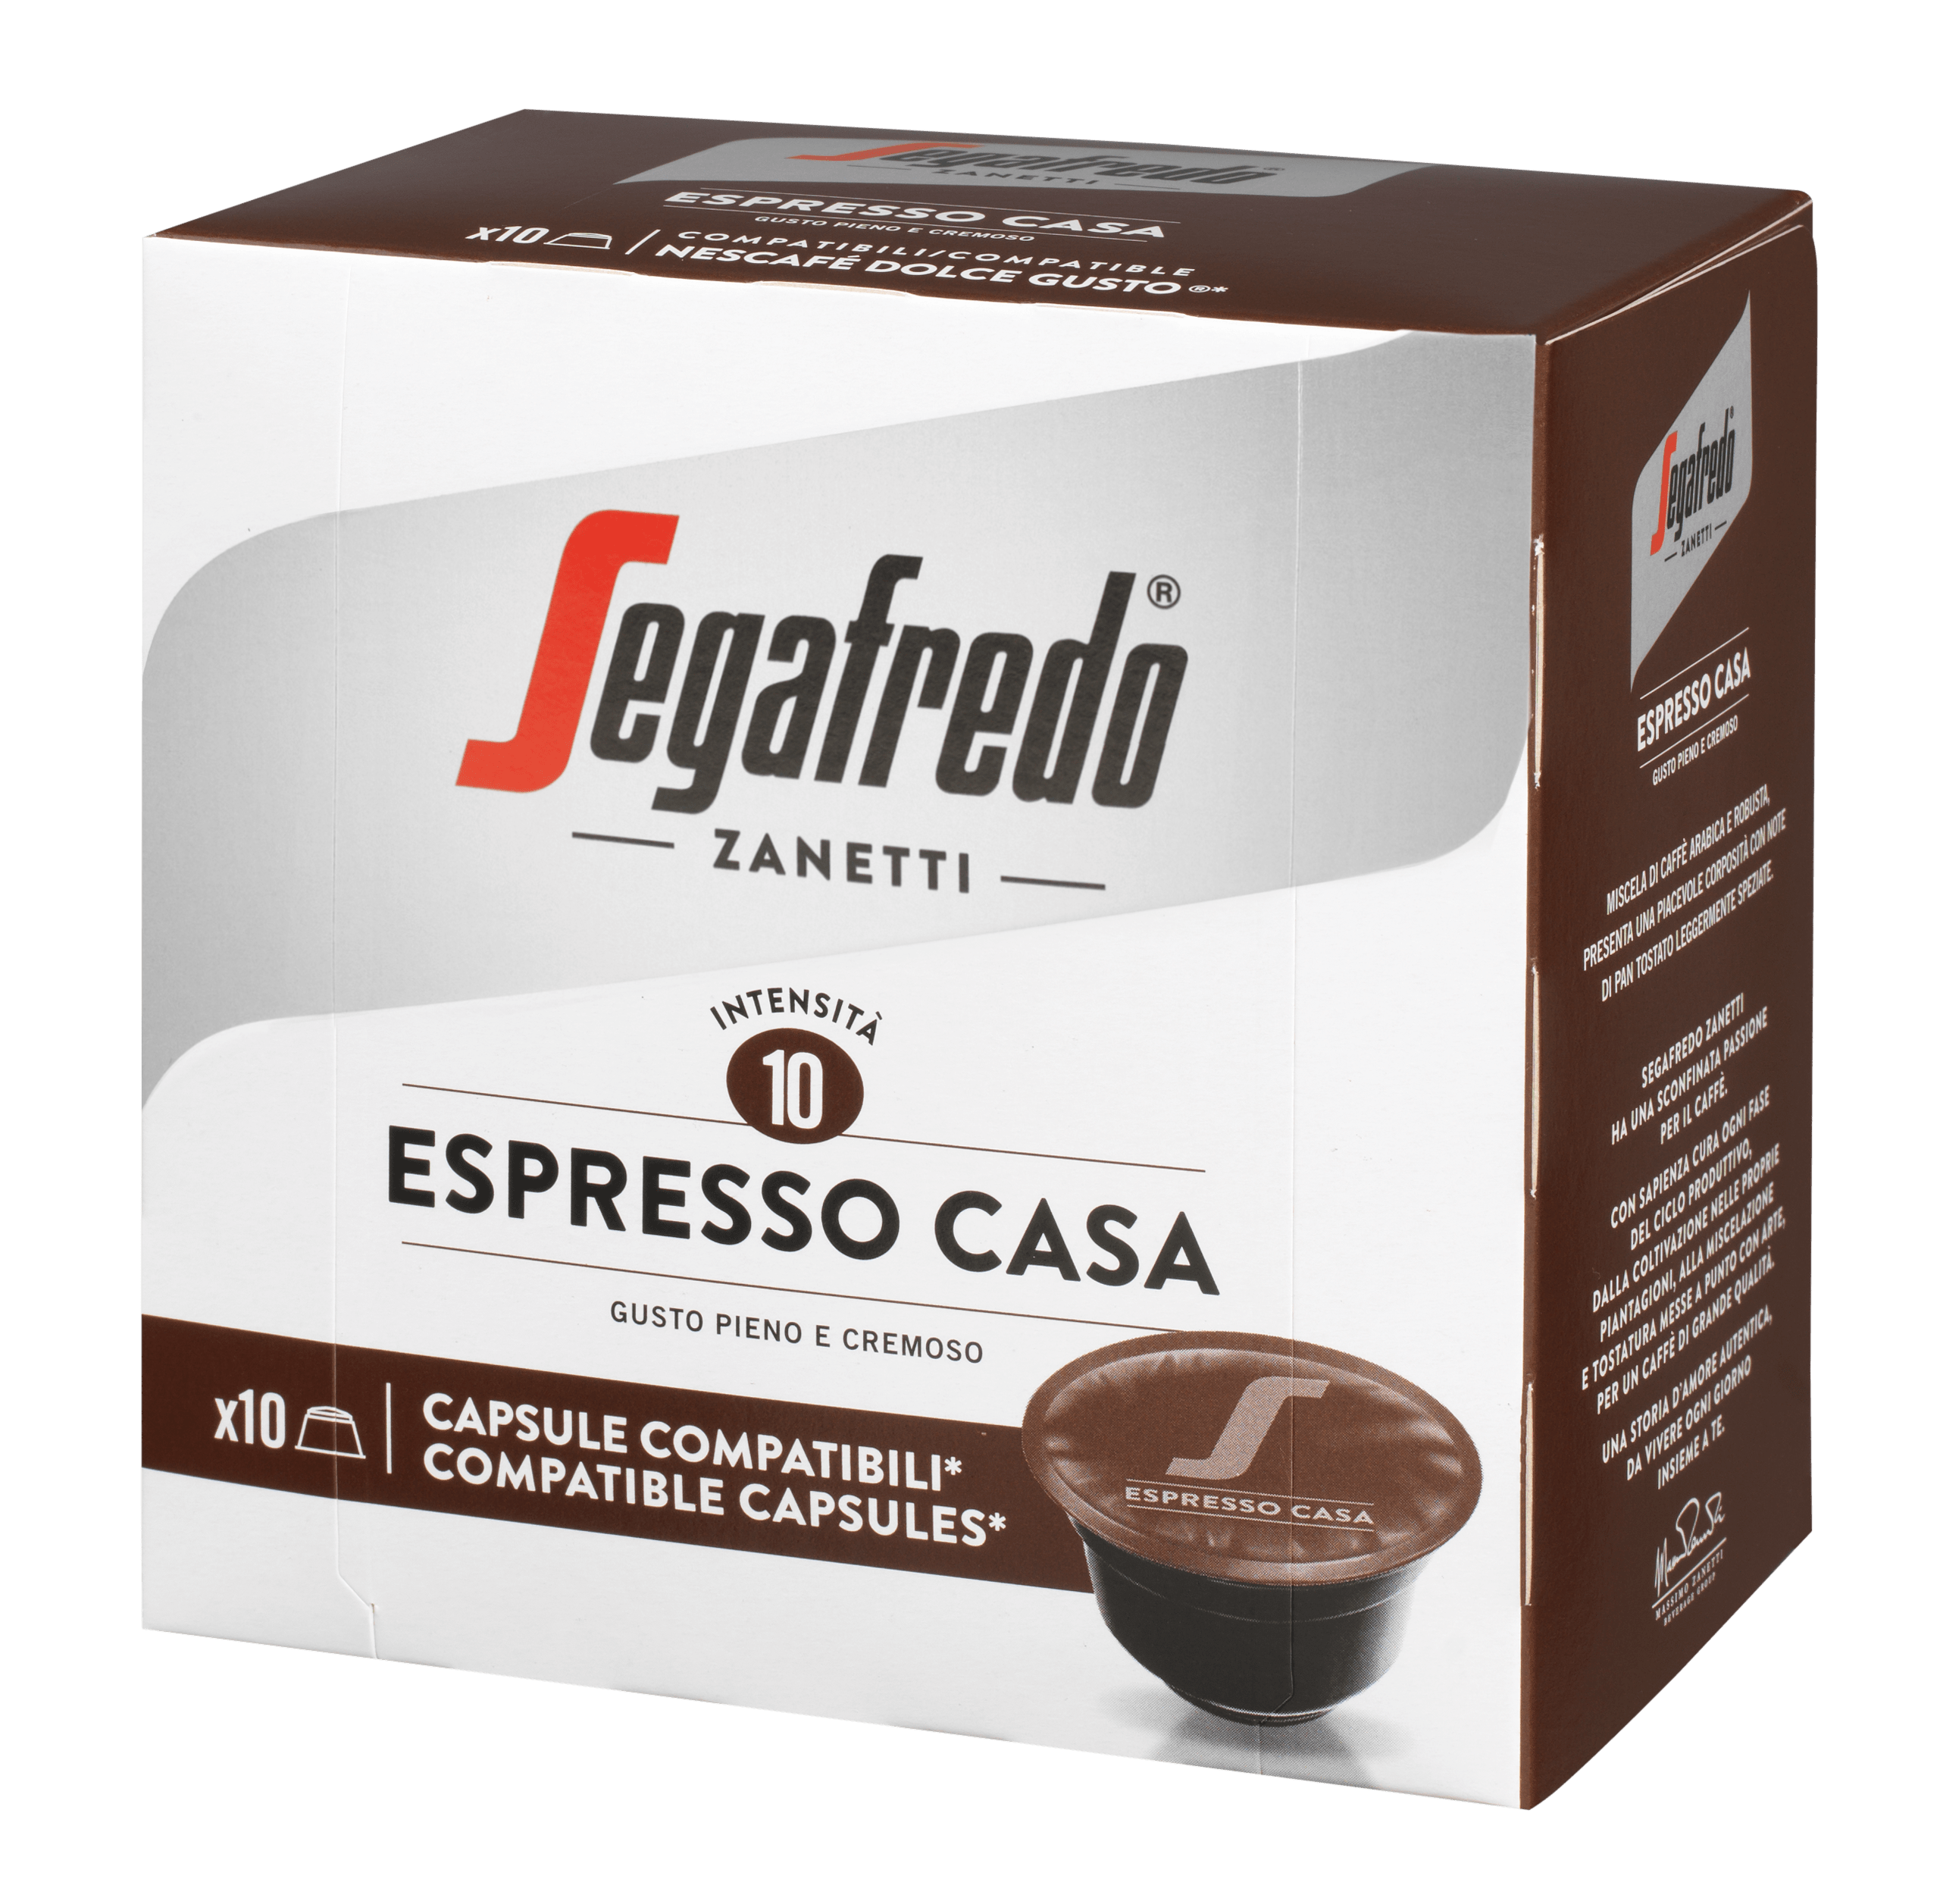 SEGAFREDO ZANETTI - ESPRESSO CASA COFFEE CAPSULE